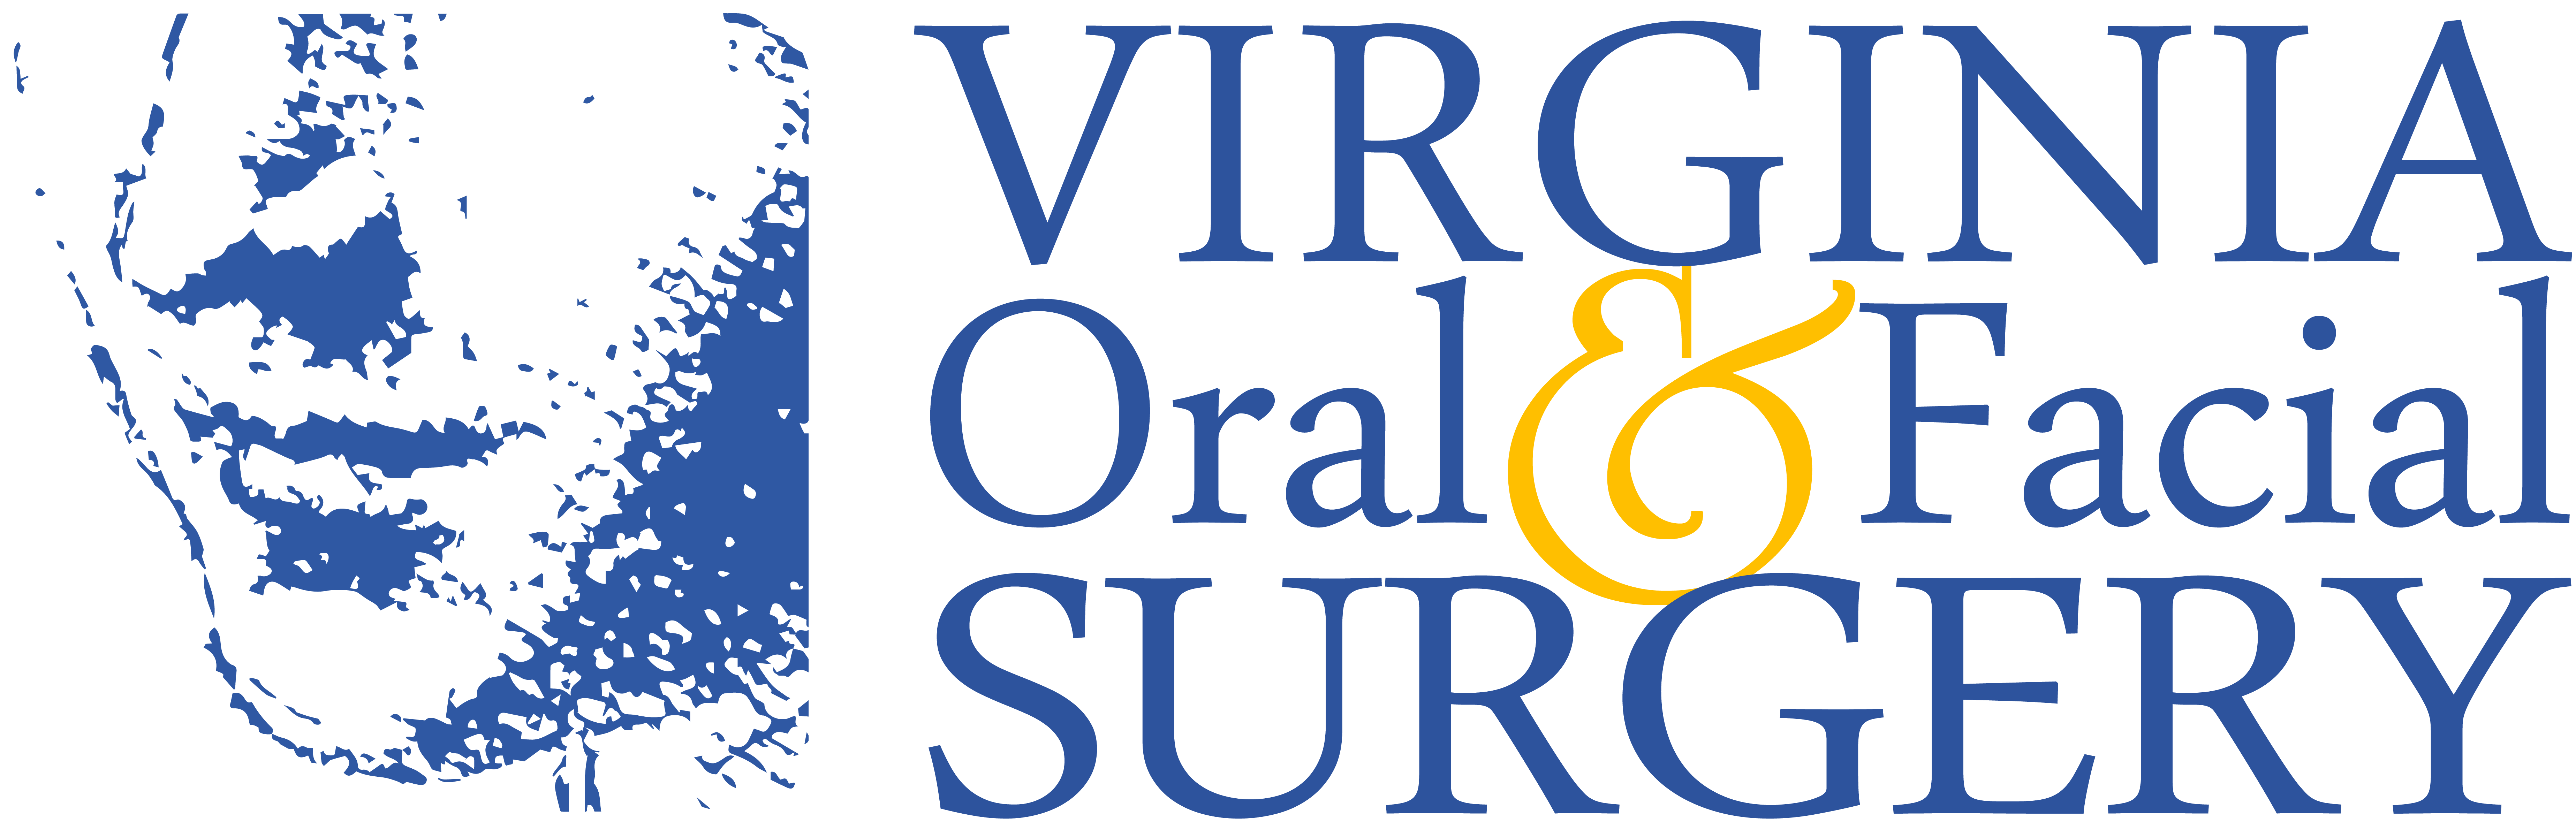 Virginia Oral & Facial Surgery logo